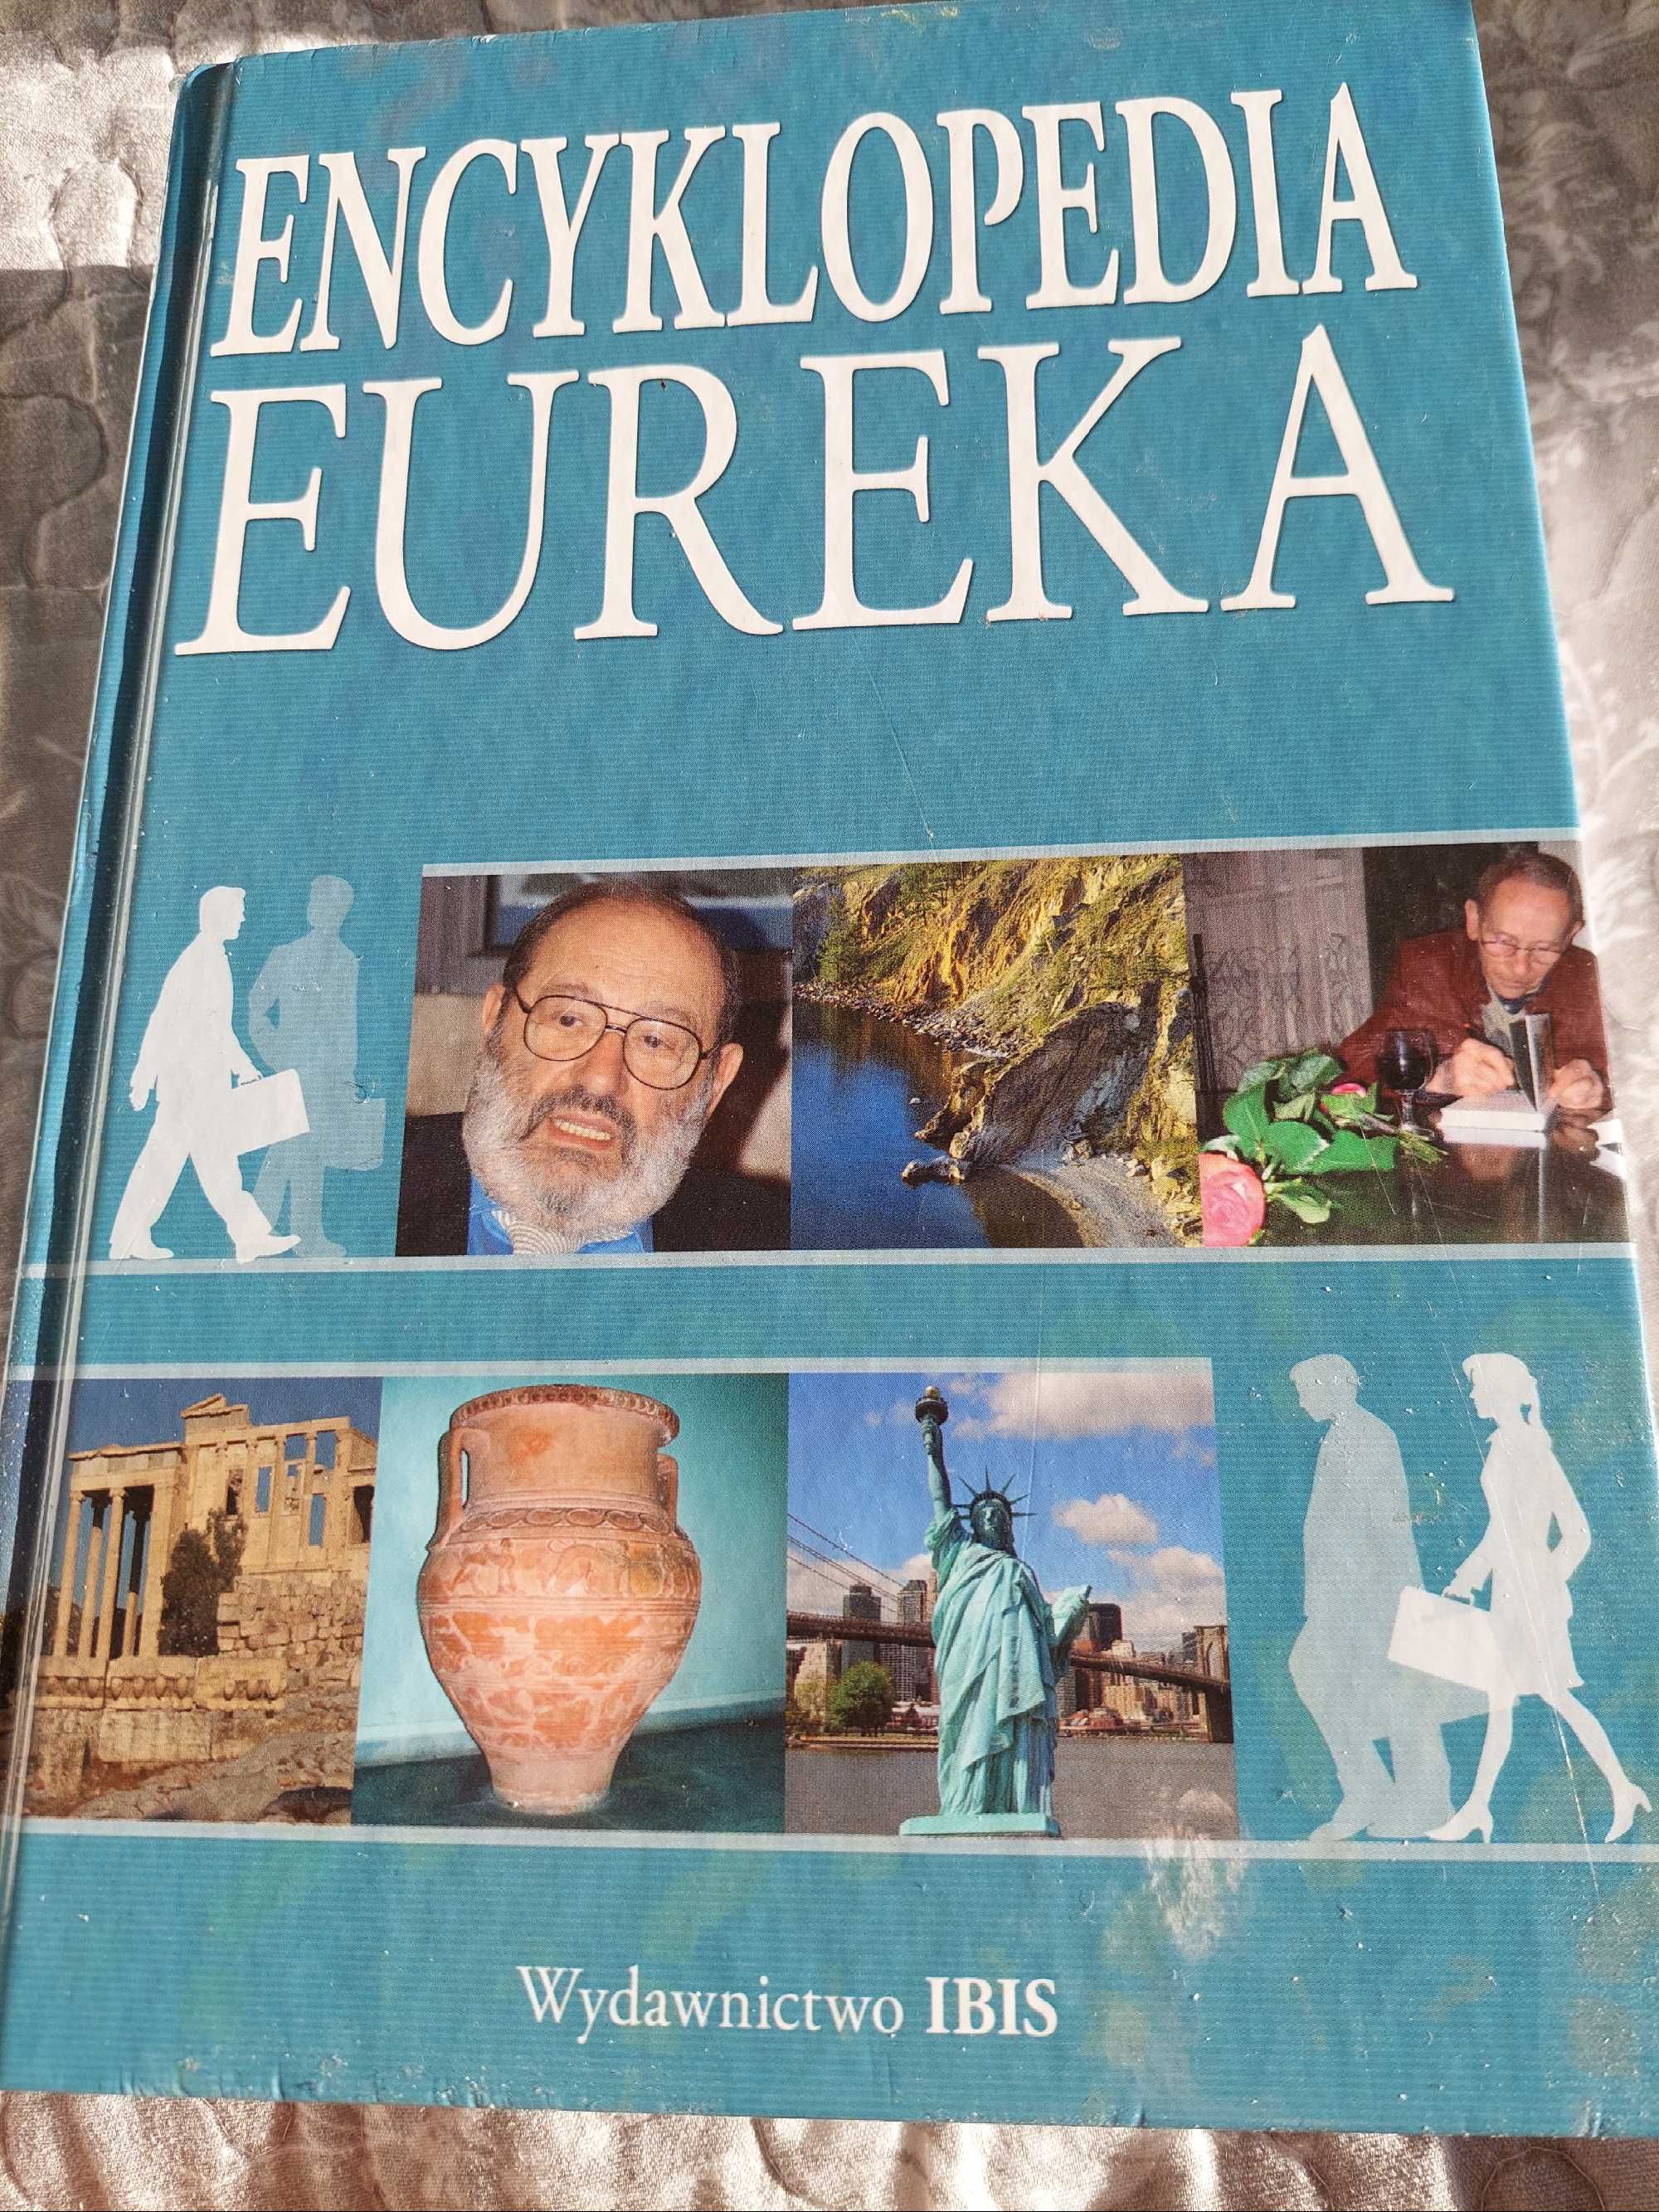 Encyklopedia EUREKA